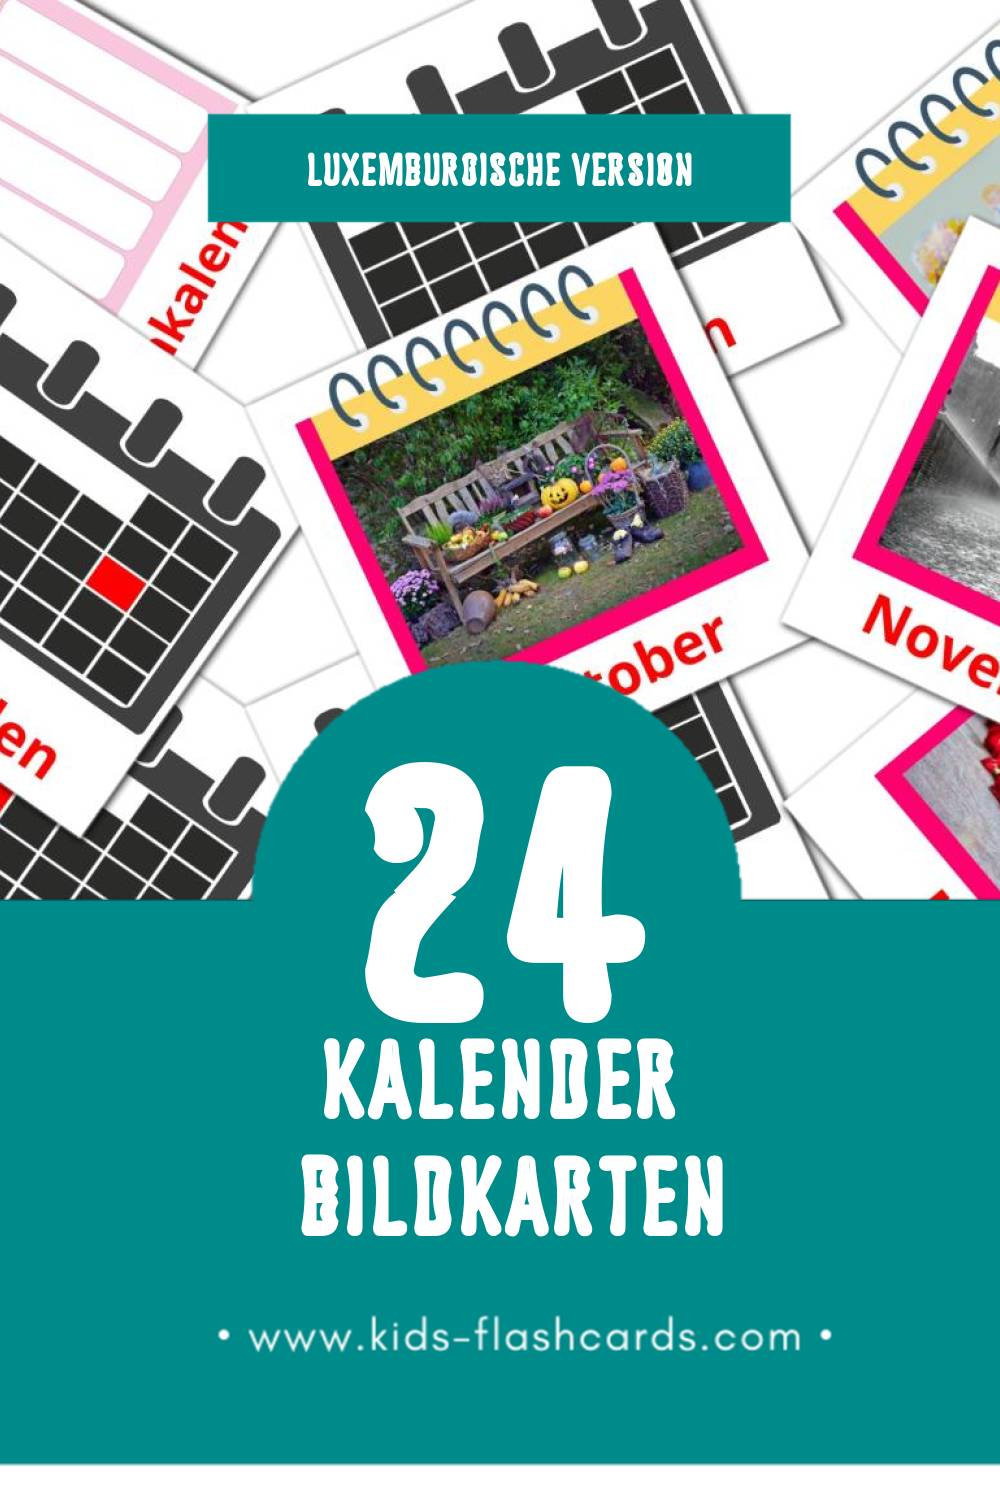 Visual Kalenner Flashcards für Kleinkinder (24 Karten in Luxemburgisch)